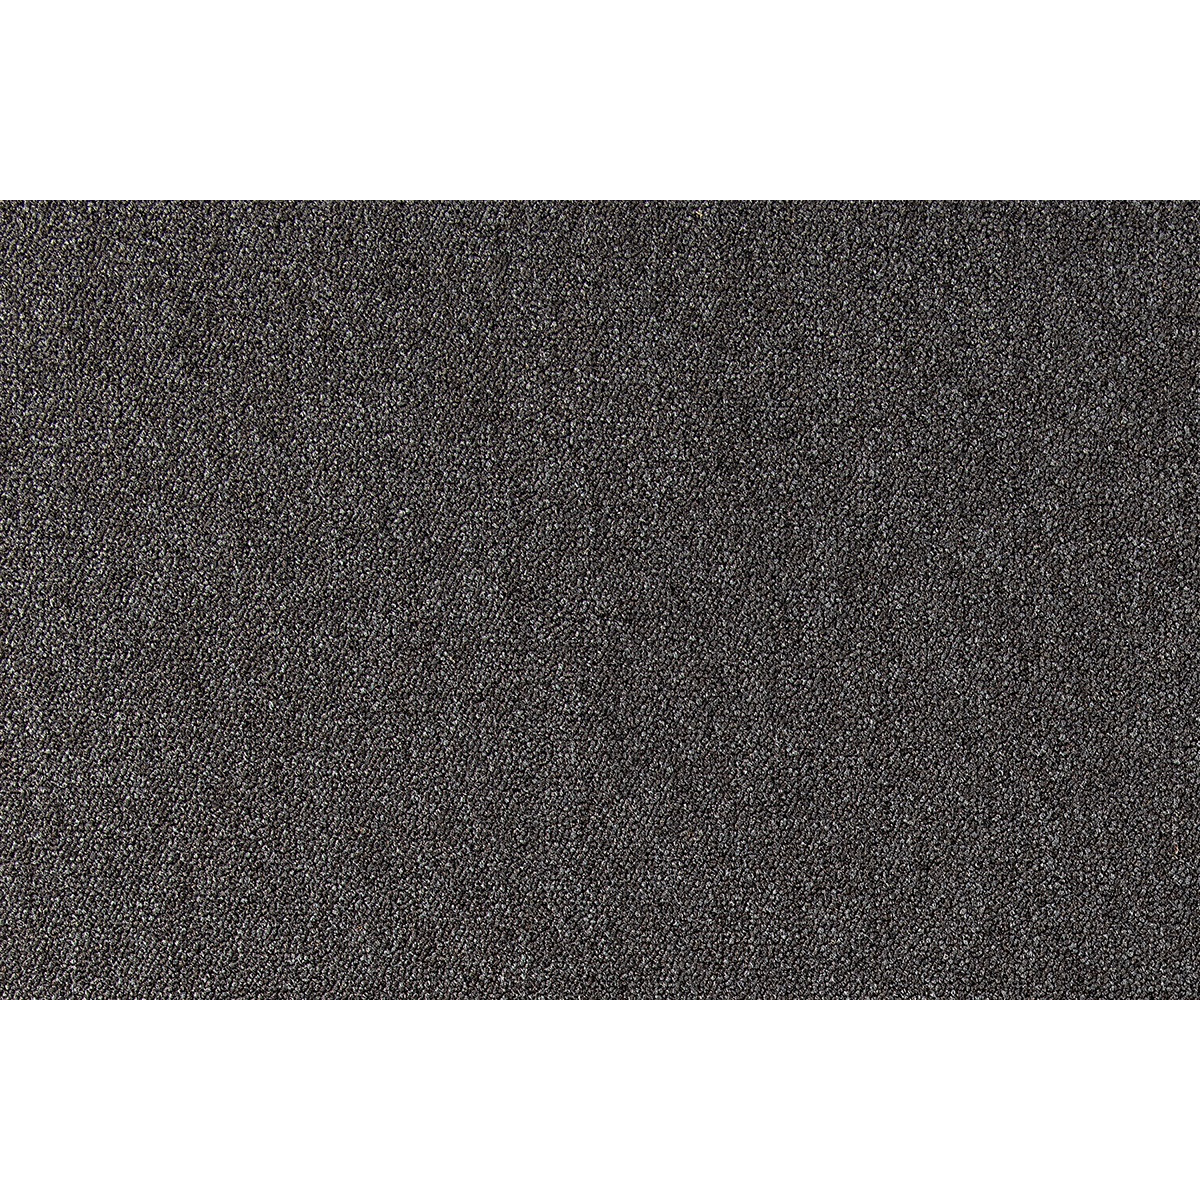 Metrážový koberec Cobalt SDN 64051 - AB černý, zátěžový